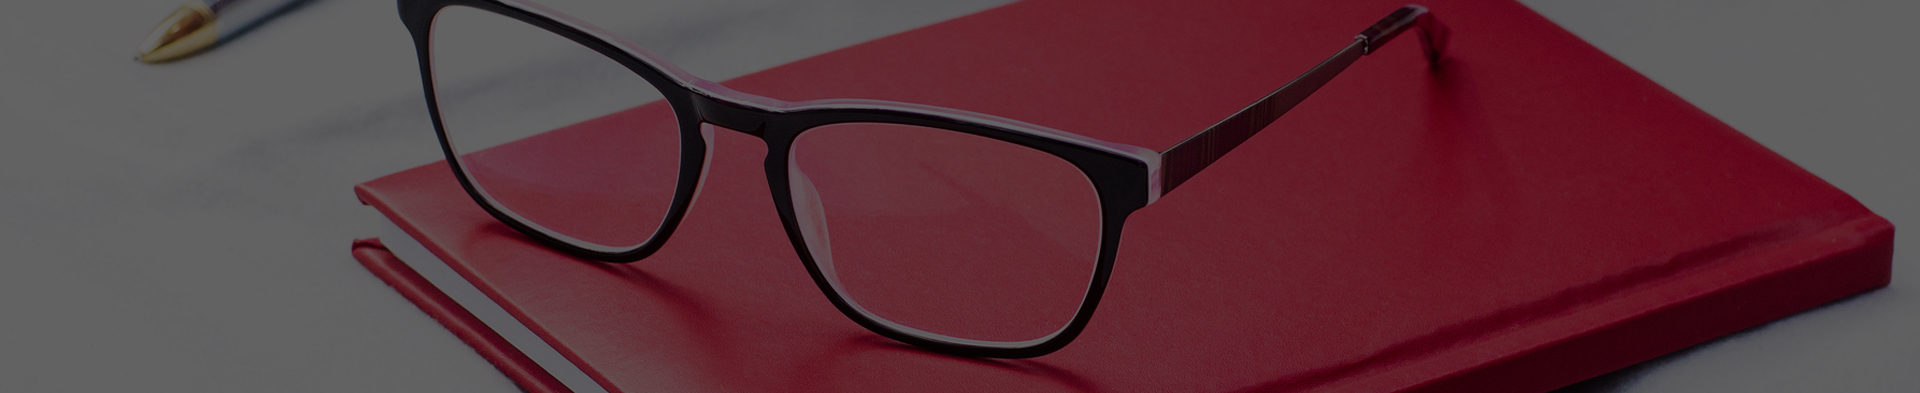 Nová brýlová skla do vašich starých obrub značky Icona